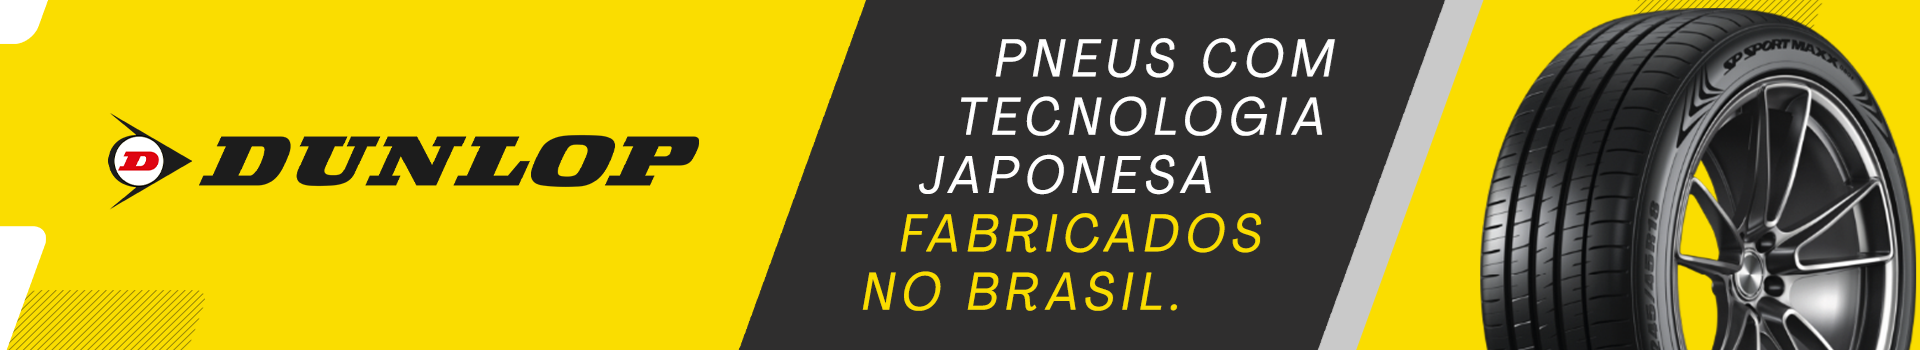 Pneus com tecnologia japonesa. Fabricados no Brasil.